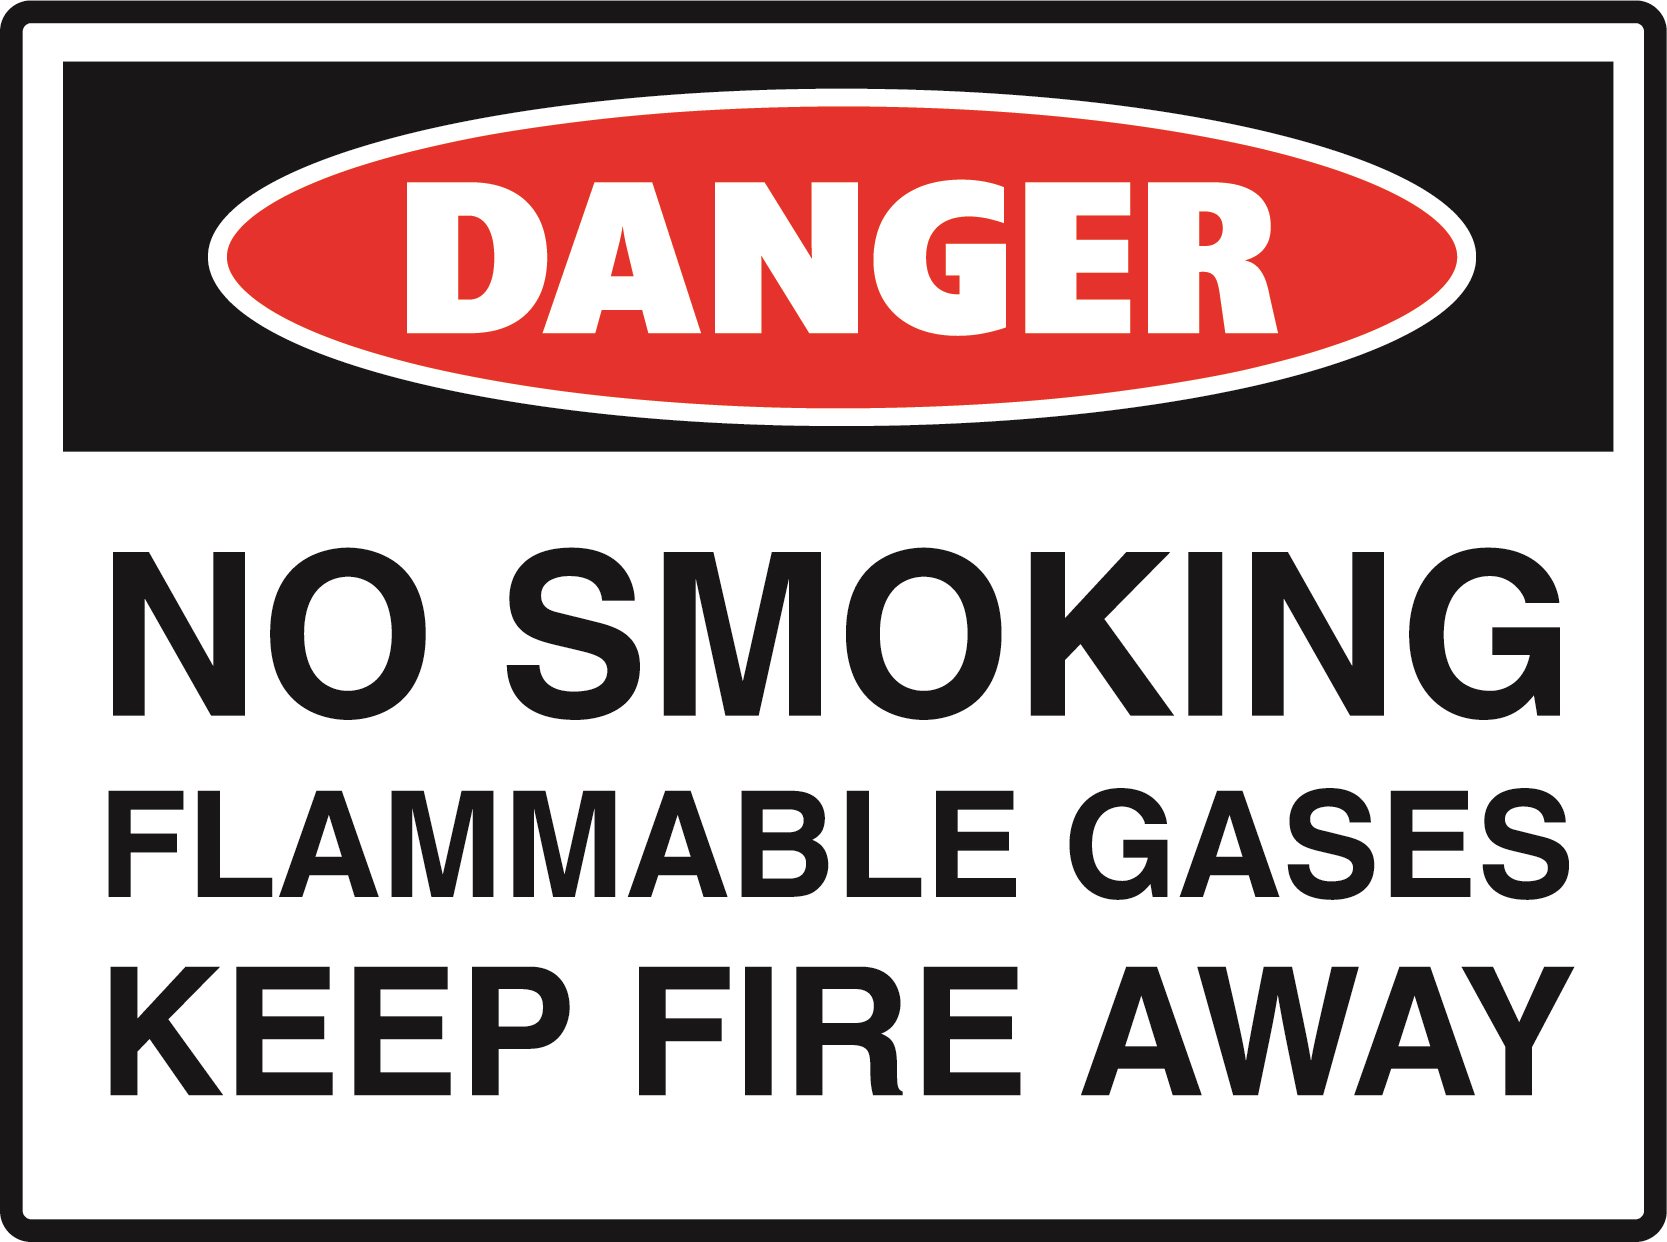 Danger - No Smoking Flammable Gas Keep Fire Away